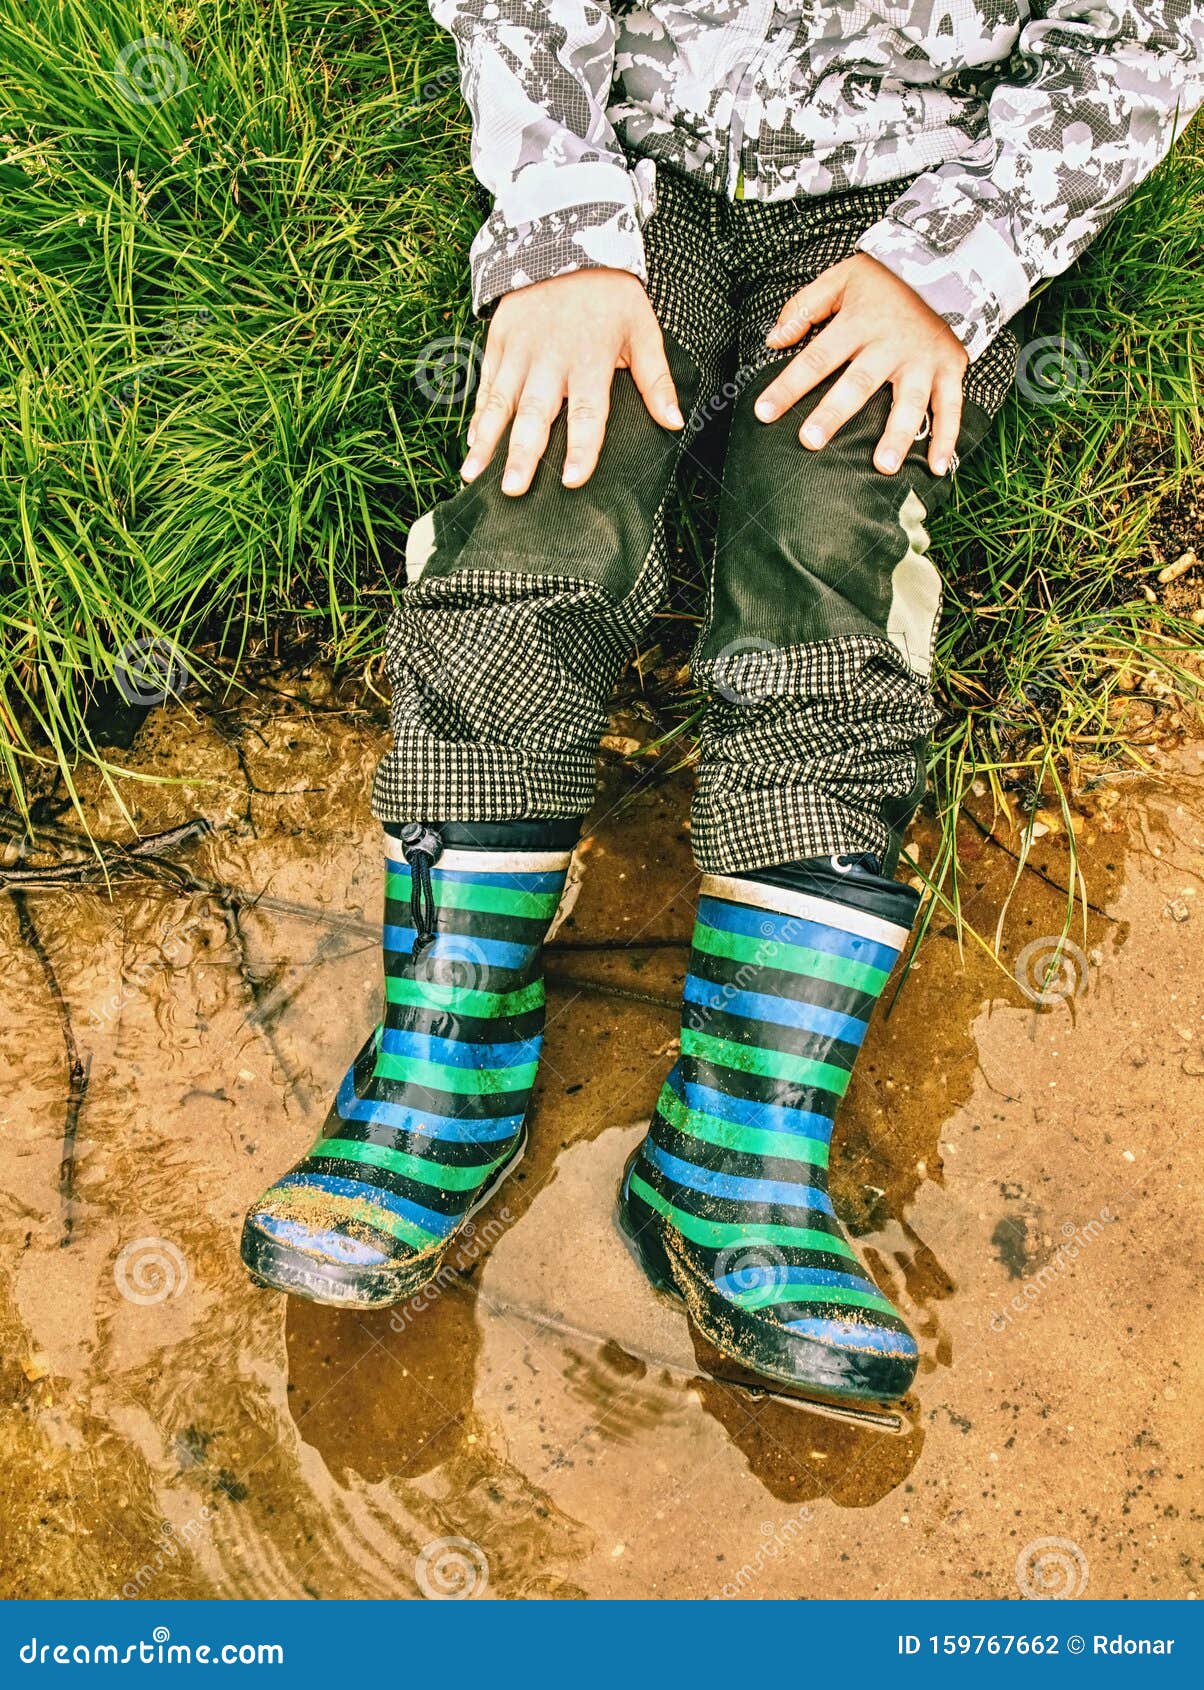 child wearing rain boots , sits at muddy puddle